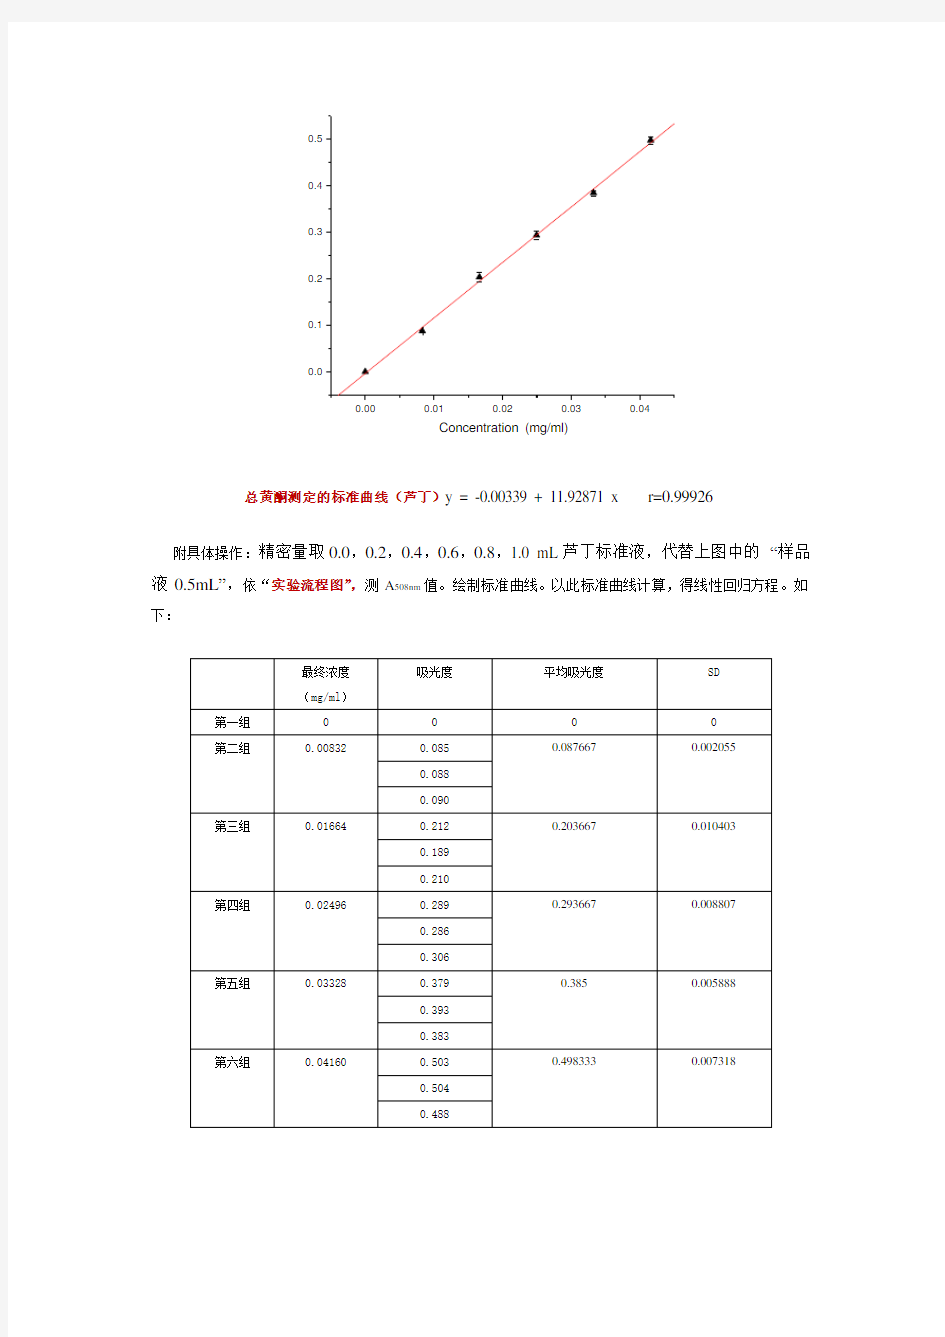 亚硝酸钠-硝酸铝法测定总黄酮含量-实验图解-李熙灿-Xican Li